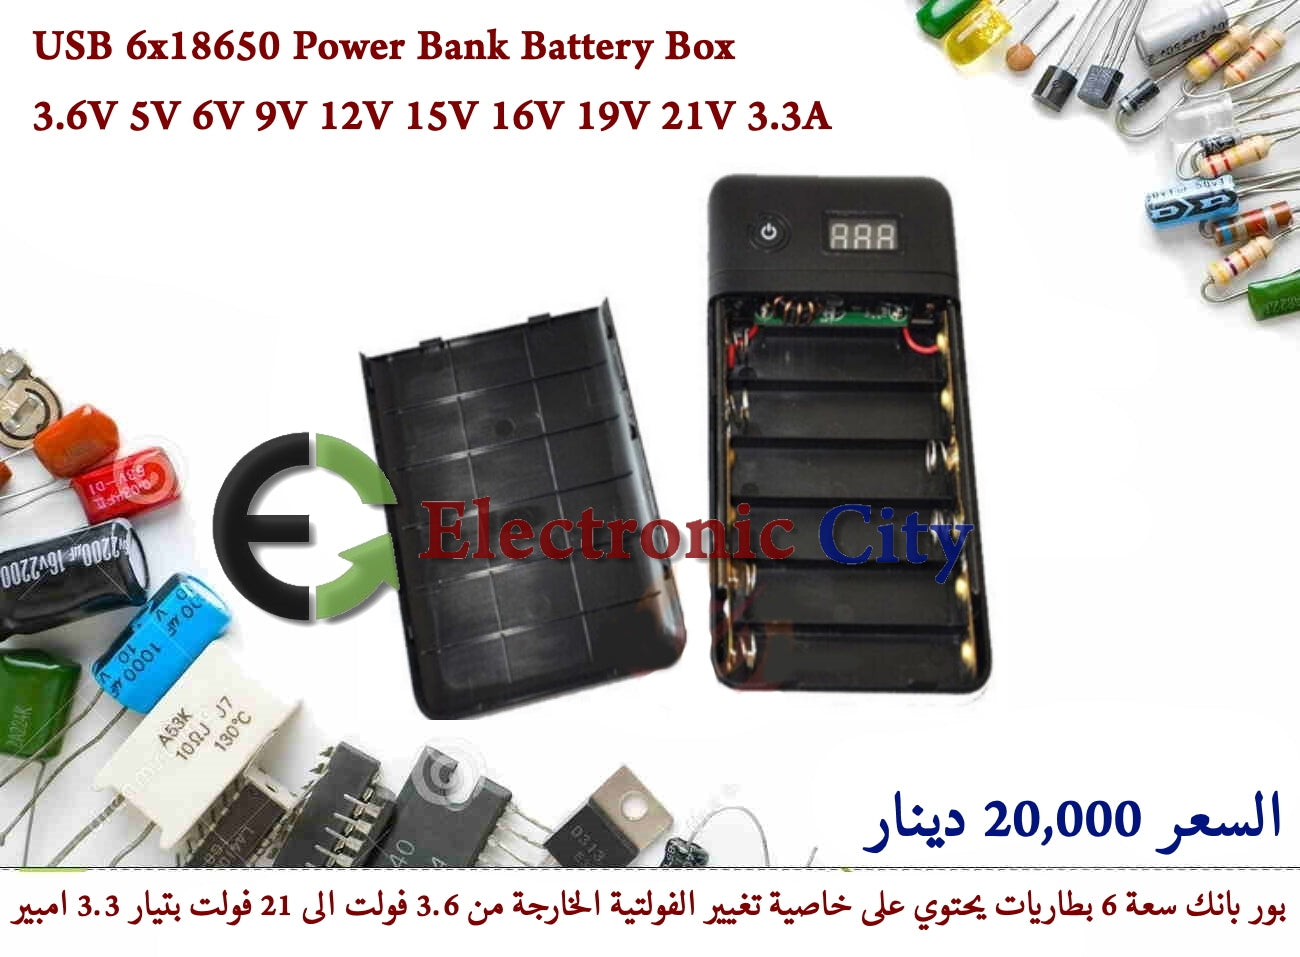 USB 6x18650 Power Bank Battery Box 3.6V 5V 6V 9V 12V 15V 16V 19V 21V 3.3A